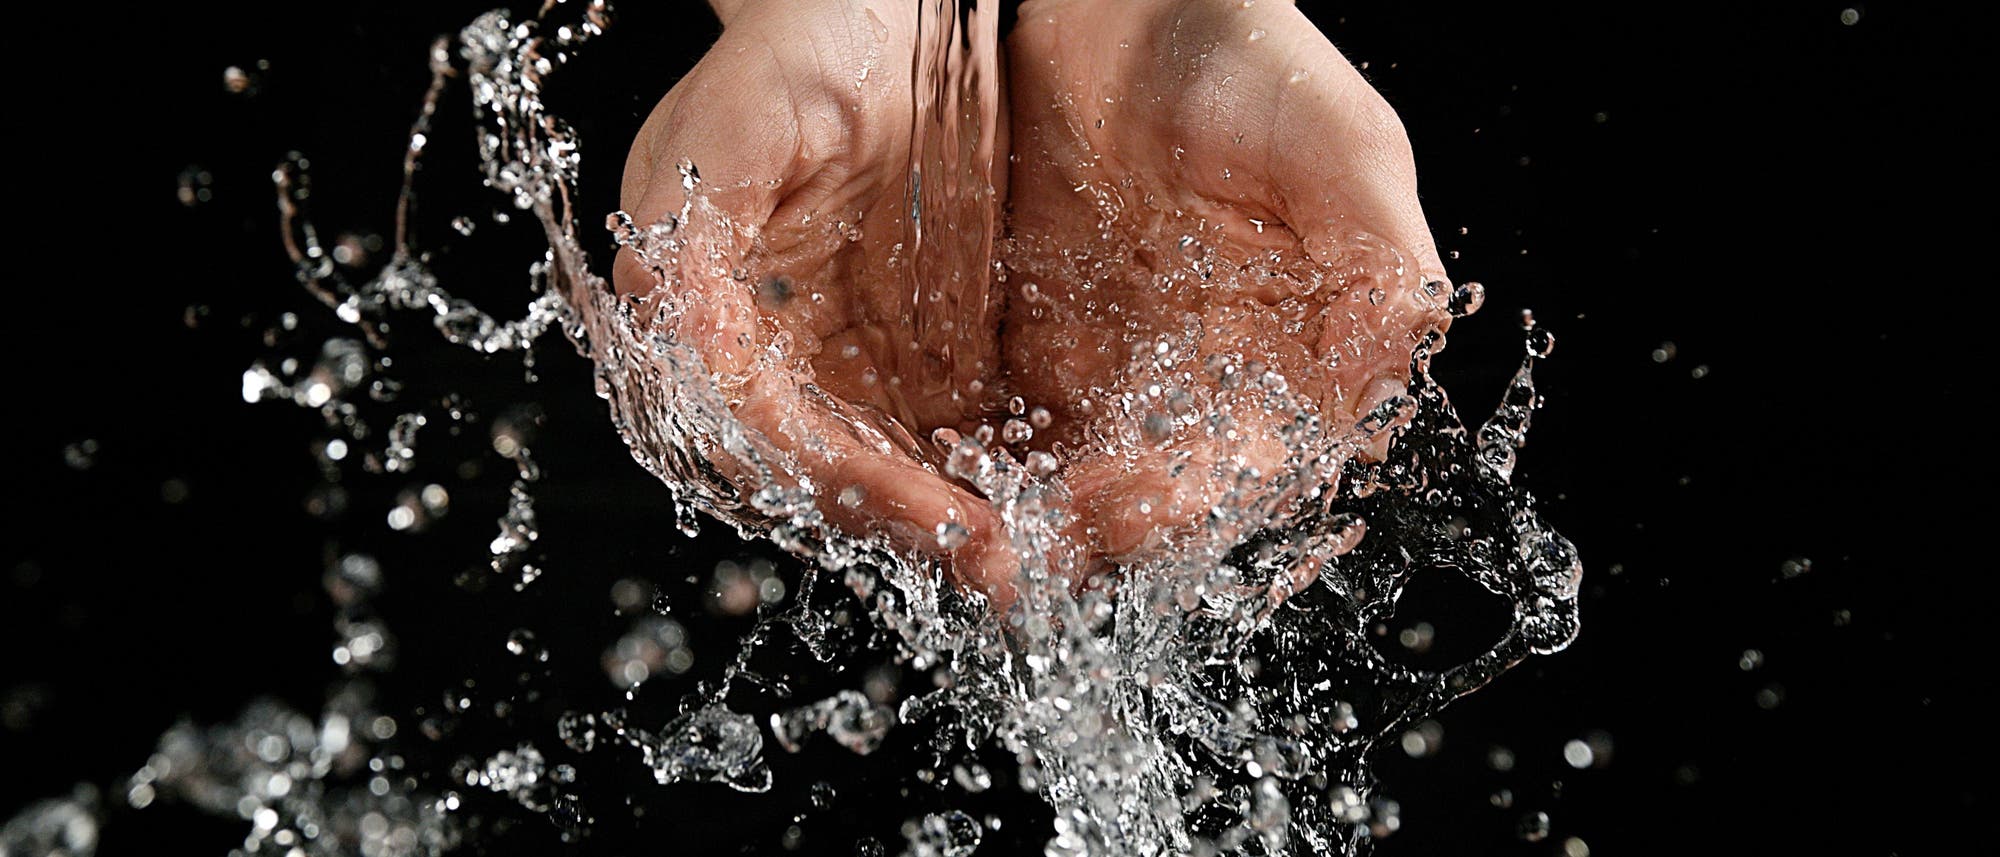 Hände vor schwarzem Hintergrund werden aus einem Wasserhahn mit Wasser begossen